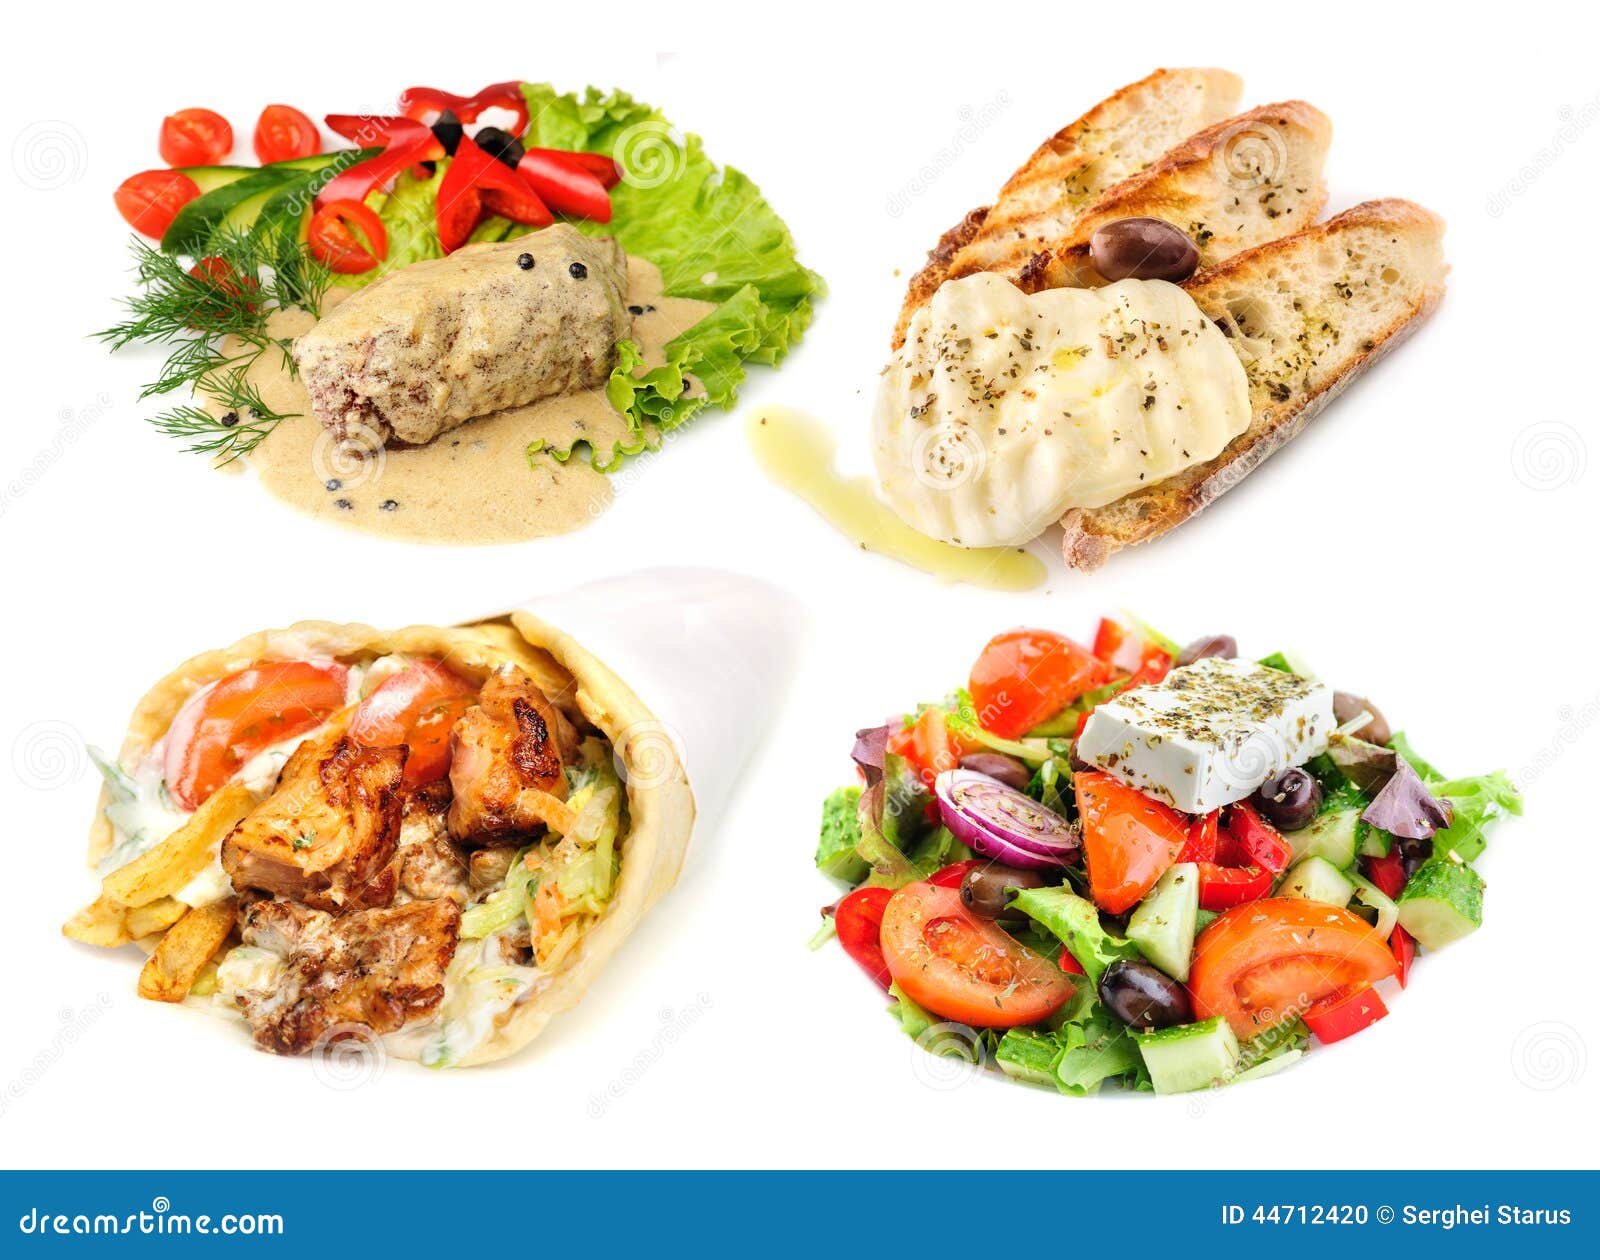 希腊沙拉 库存照片. 图片 包括有 烹调, 干酪, 饮食, 莴苣, 橄榄, 石油, 地中海, 沙拉, 希腊语 - 10761116